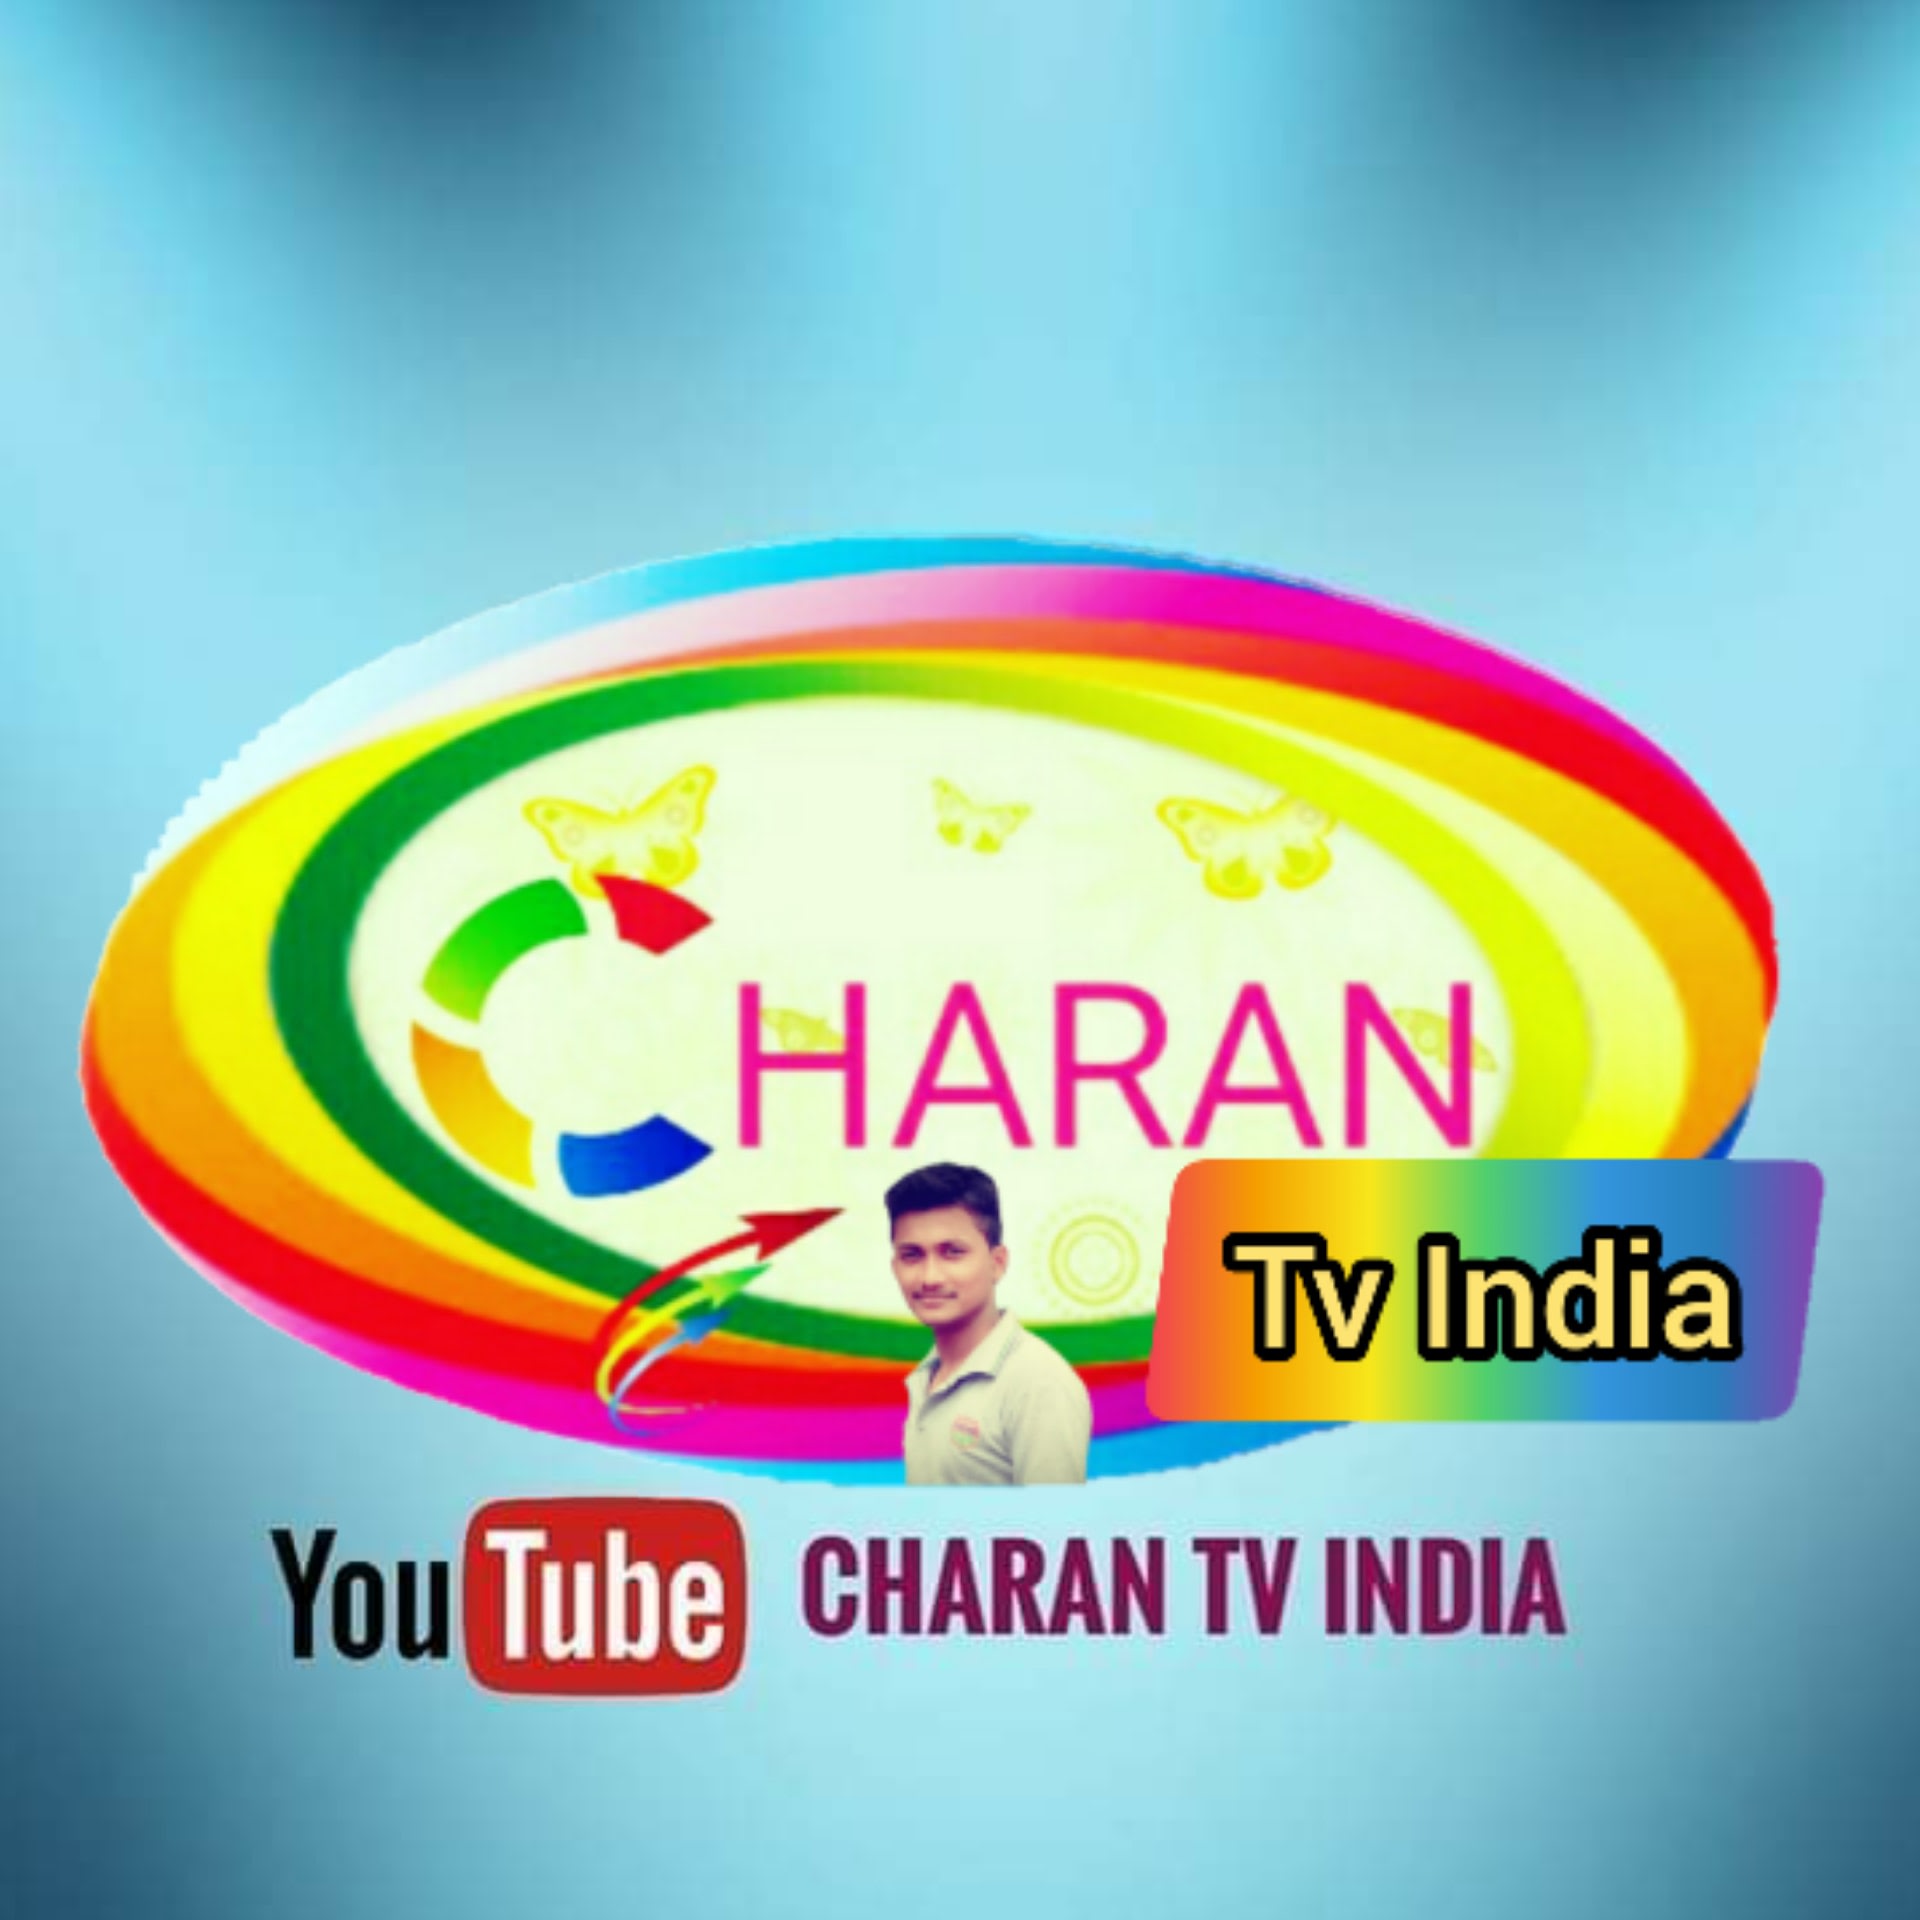 Charan TV India